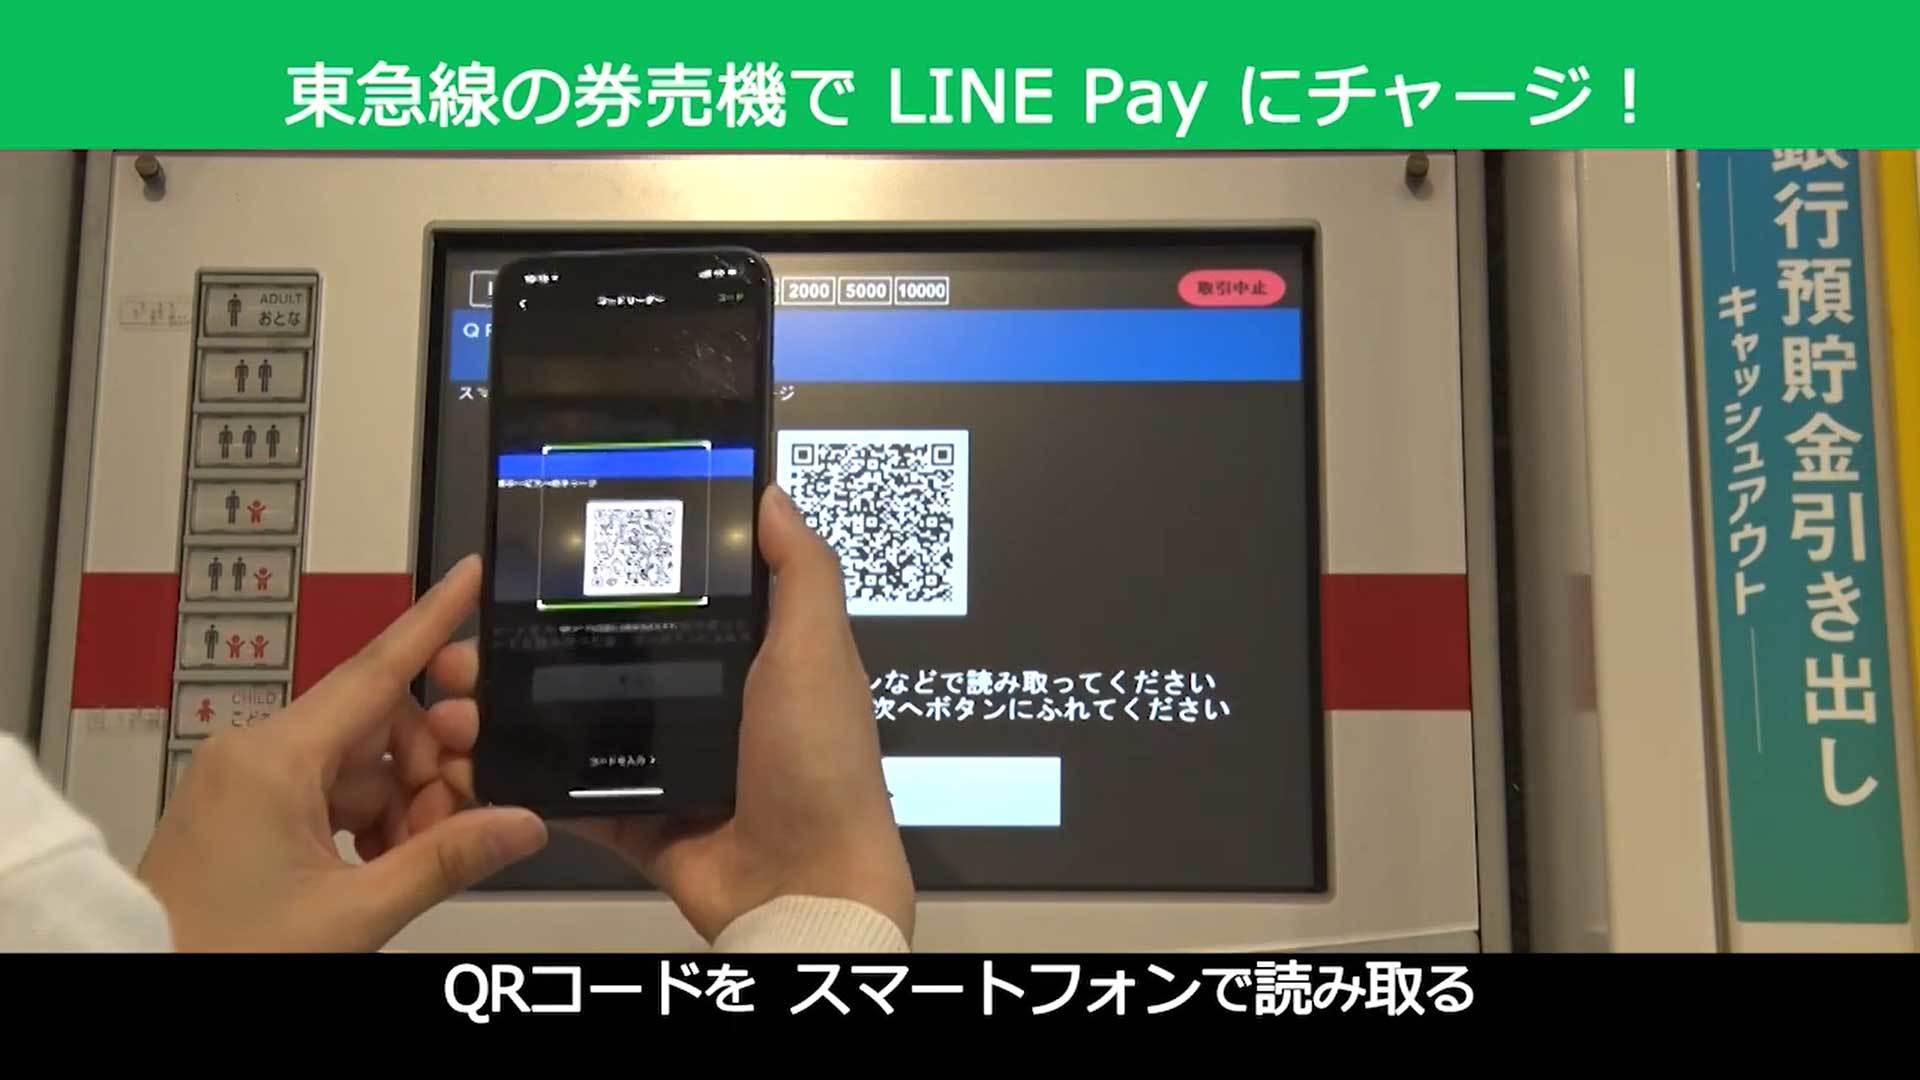 東急電鉄、券売機でLINE Payチャージに対応　「沿線のキャッシュレス化を推進」